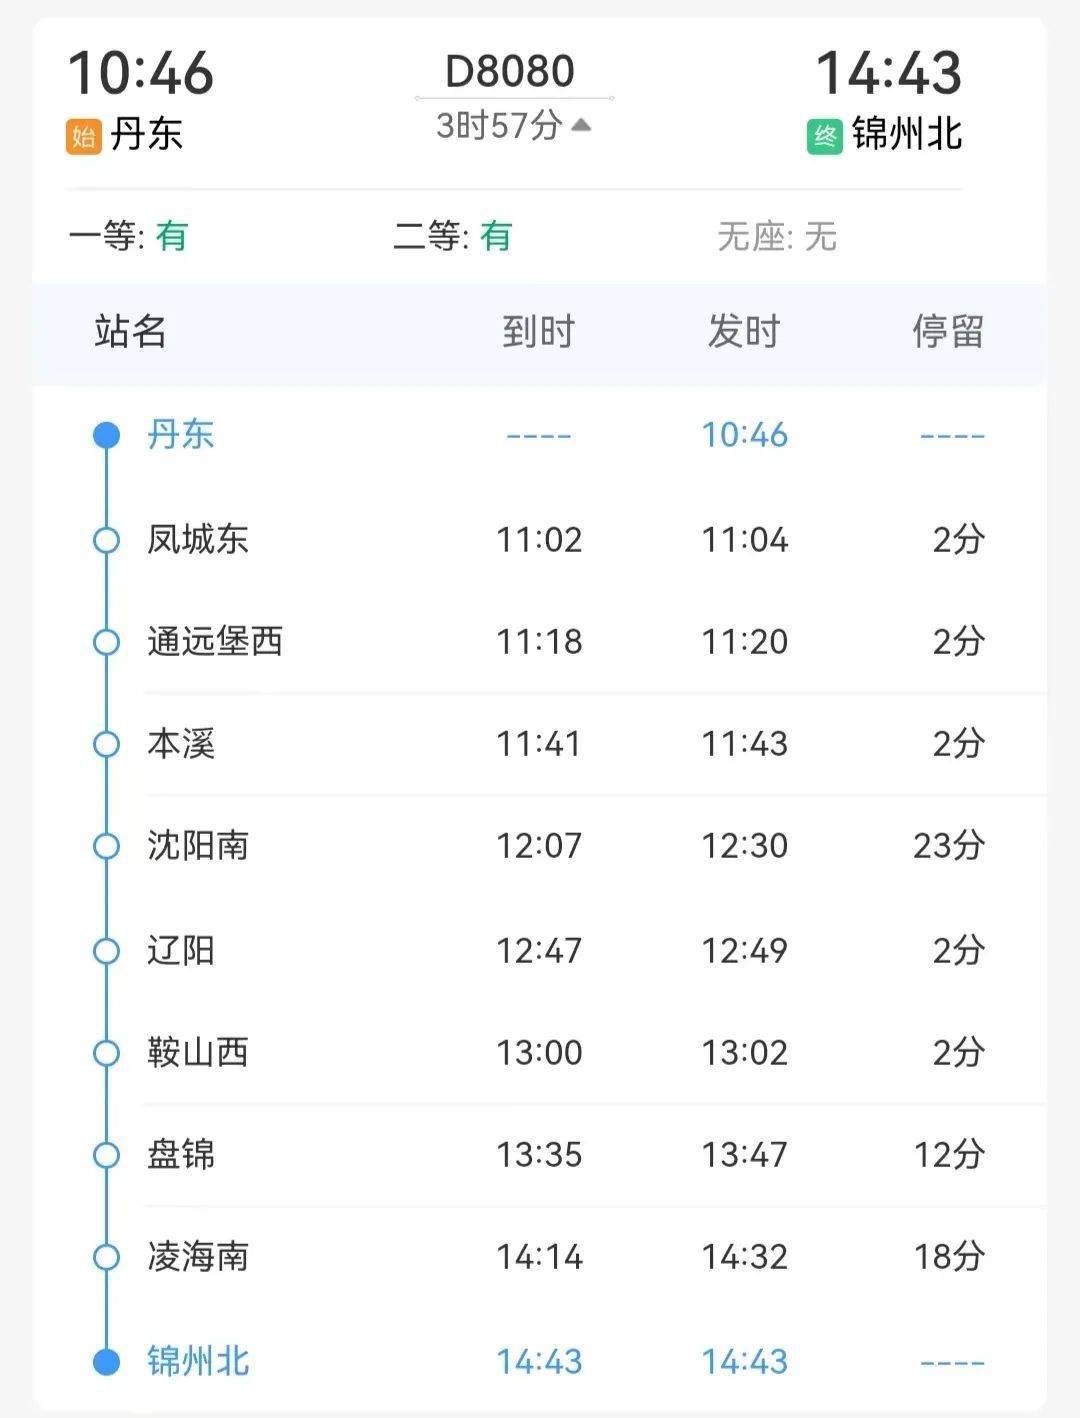 d8080次旅客列车丹东站 10:46分开车14:43 分到达锦州北站全价二等座